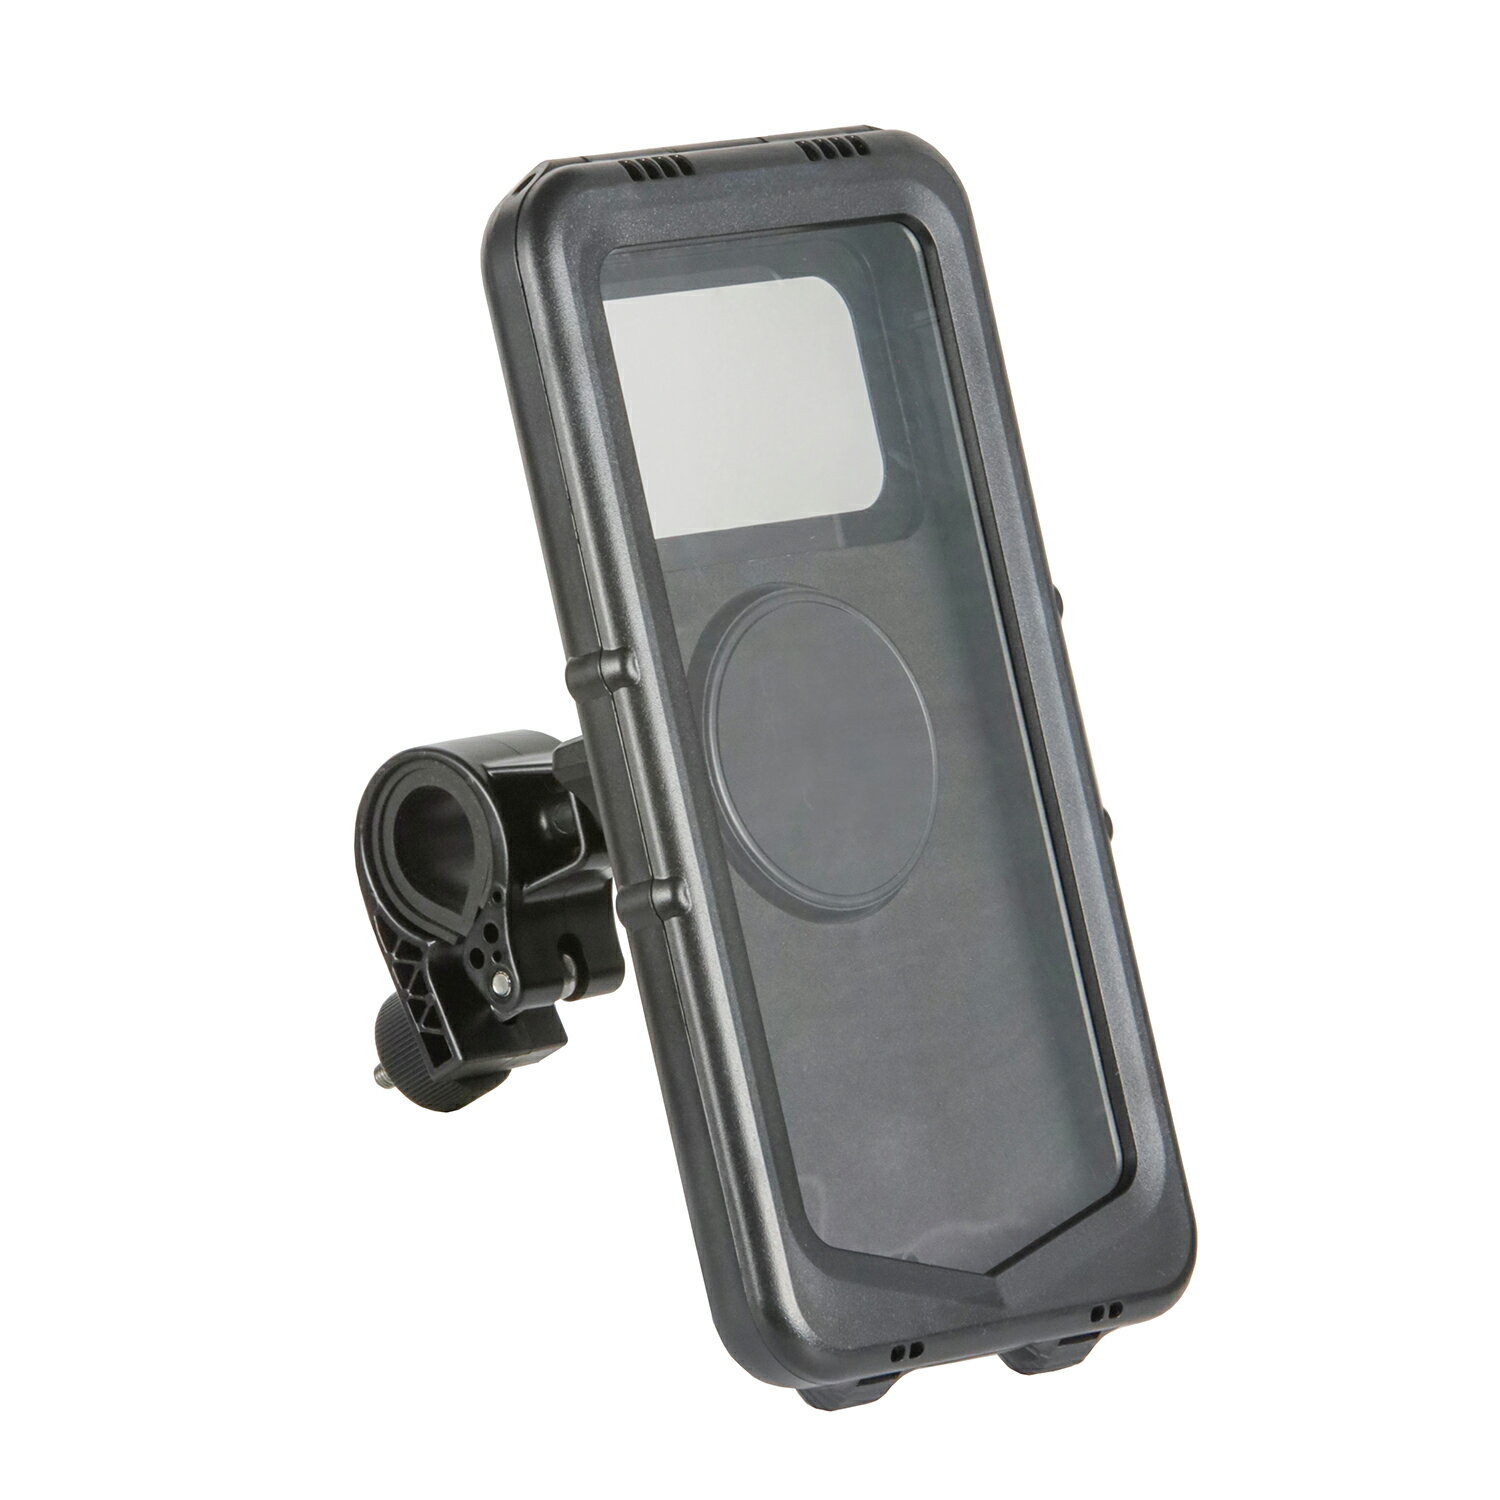 防水 スマホ ホルダー 携帯電話ホルダー タッチパネル対応 雨 ツーリング用品 バイク 自転車 スマホホルダー